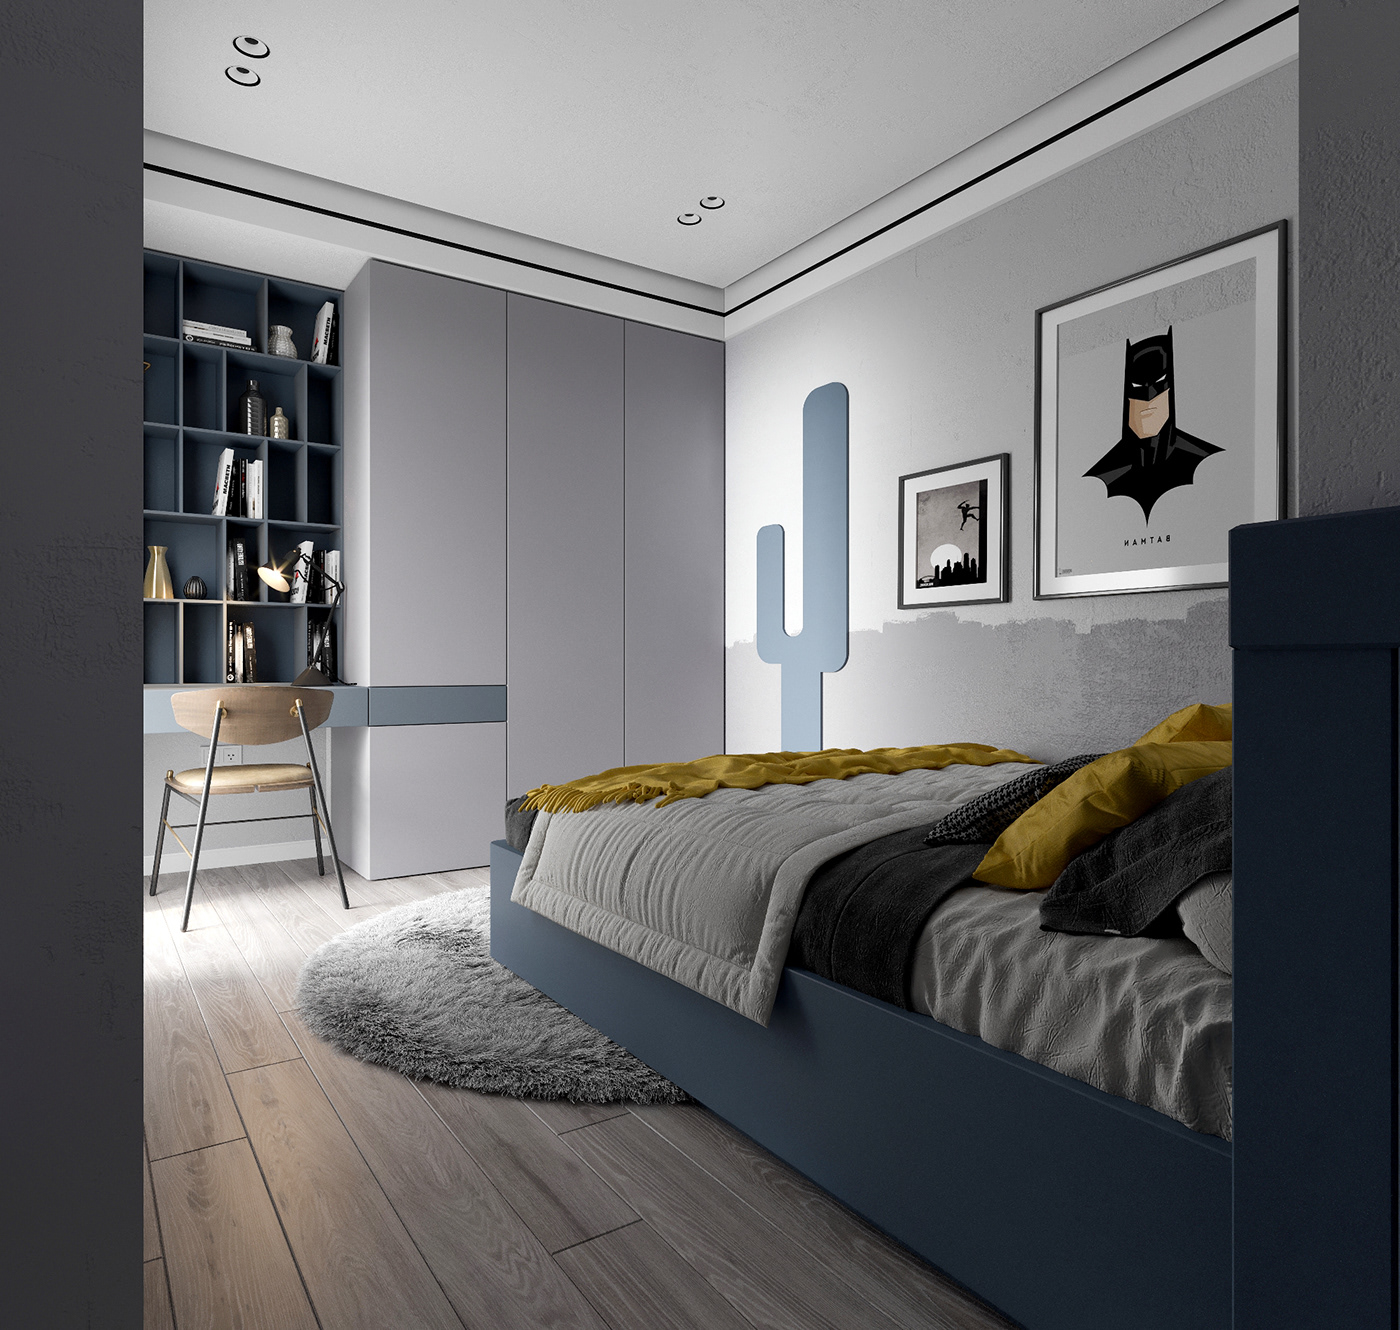 Thiết kế phòng ngủ phụ hạn chế bày biện đồ nội thất